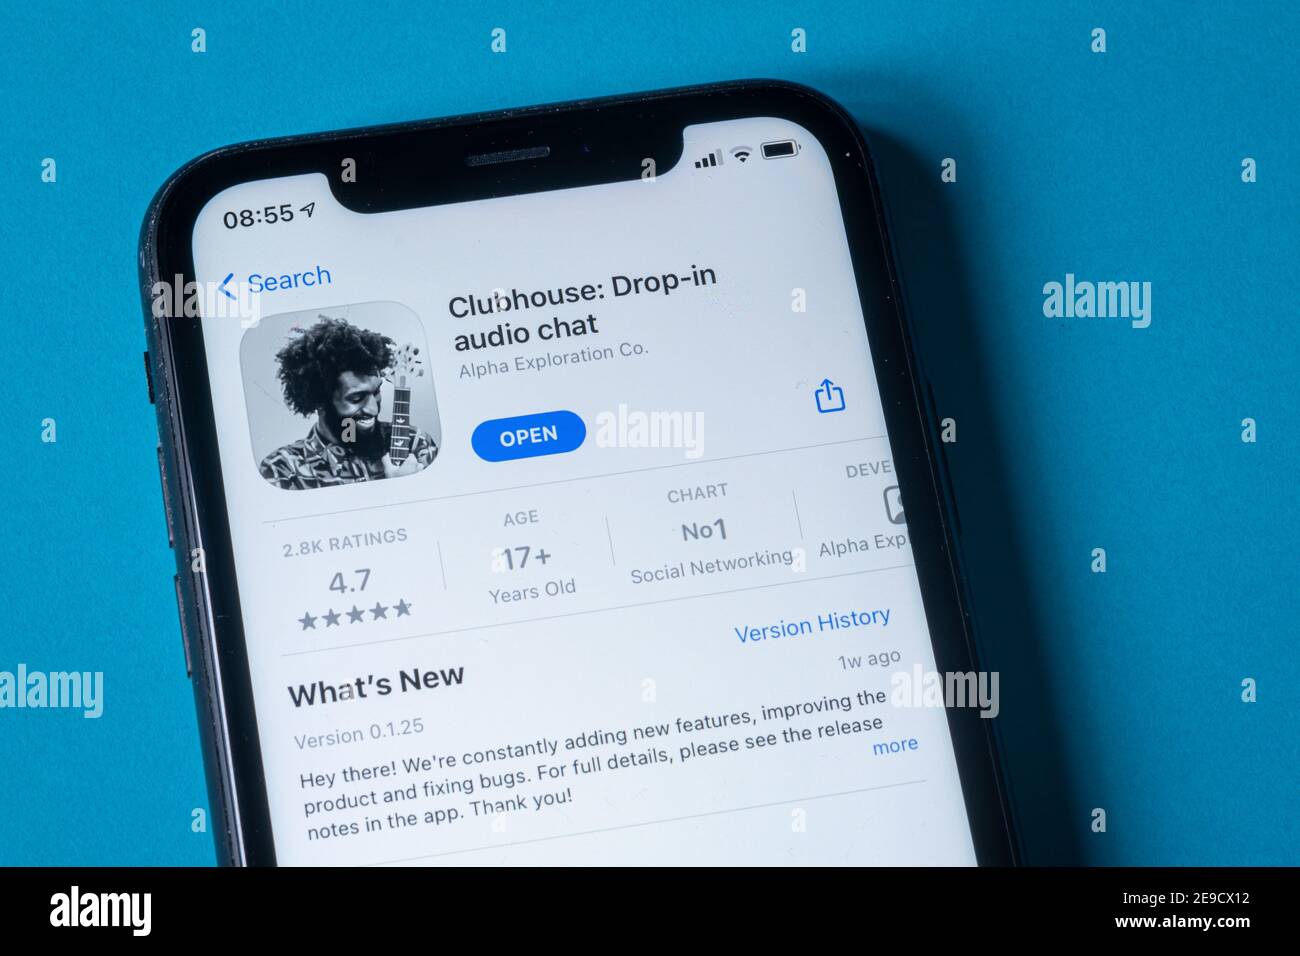 Milano, Italia - 4 febbraio 2021: App audio clubhouse drop-in su smartphone su sfondo blu. L'app solo invito e basata su audio è ora al primo posto tra f Foto Stock